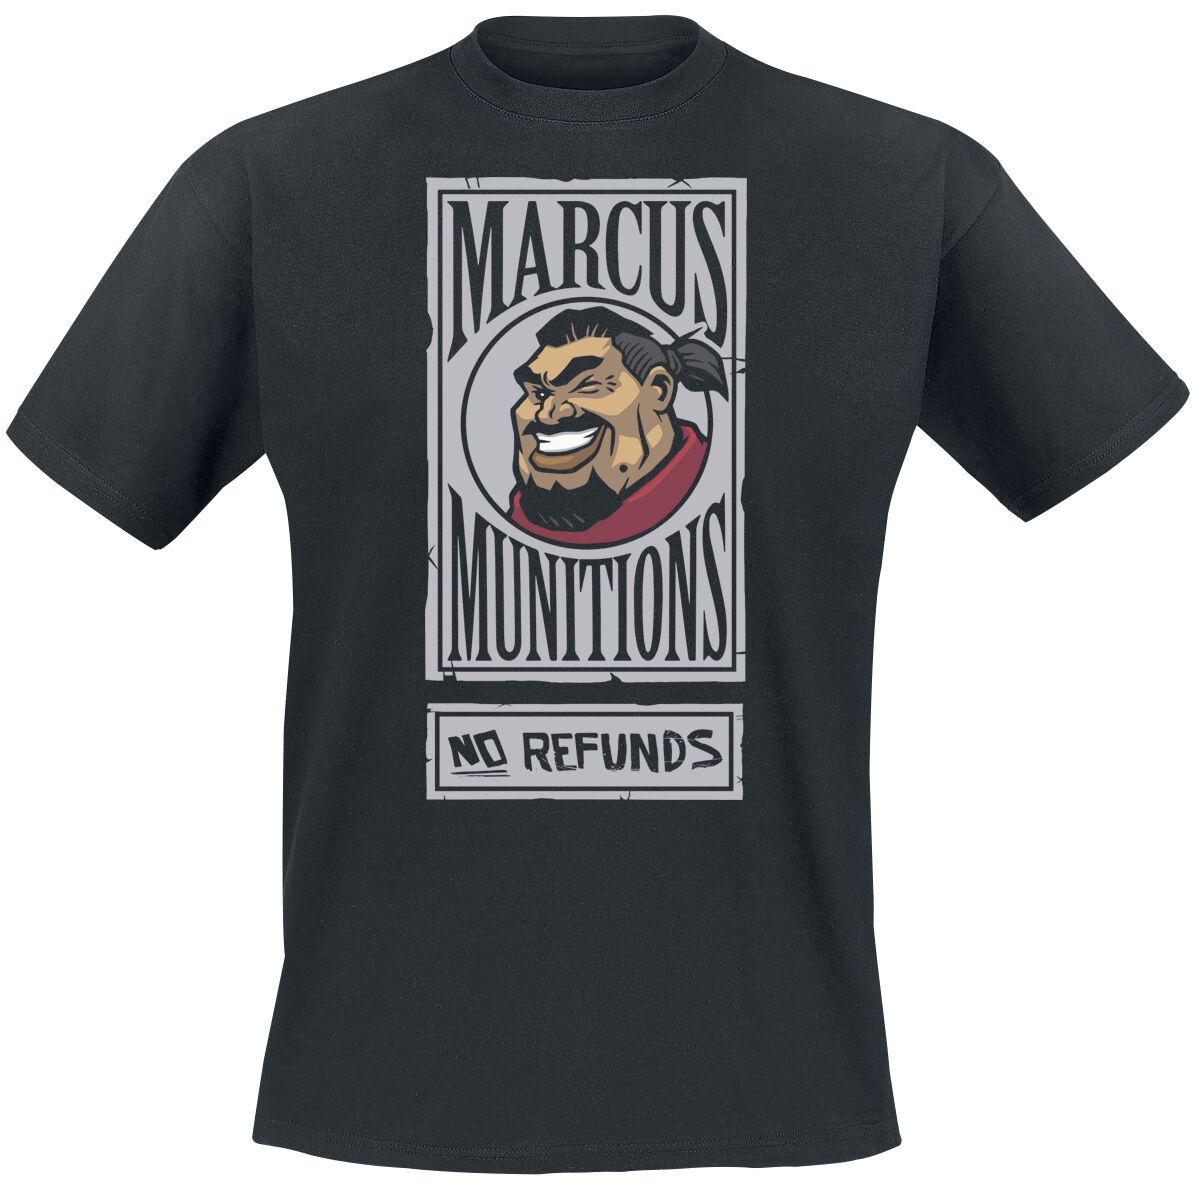 Borderlands - Gaming T-Shirt - 3 - Marcus Munitions - S bis XL - für Männer - Größe M - schwarz  - EMP exklusives Merchandise!